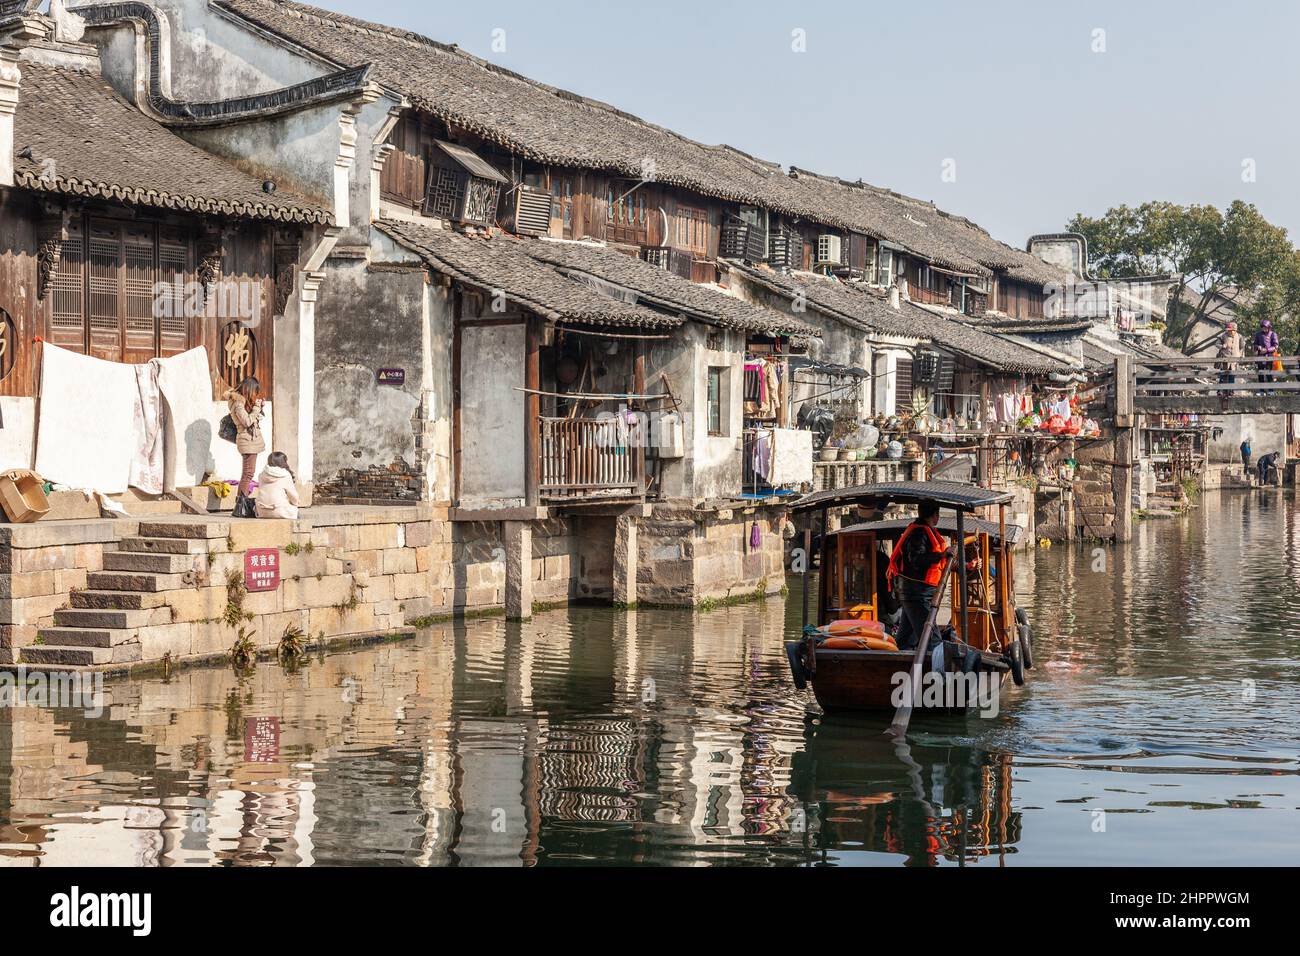 Vieilles maisons traditionnelles en bois le long du canal principal dans le village aquatique de Wenzhou, en Chine Banque D'Images